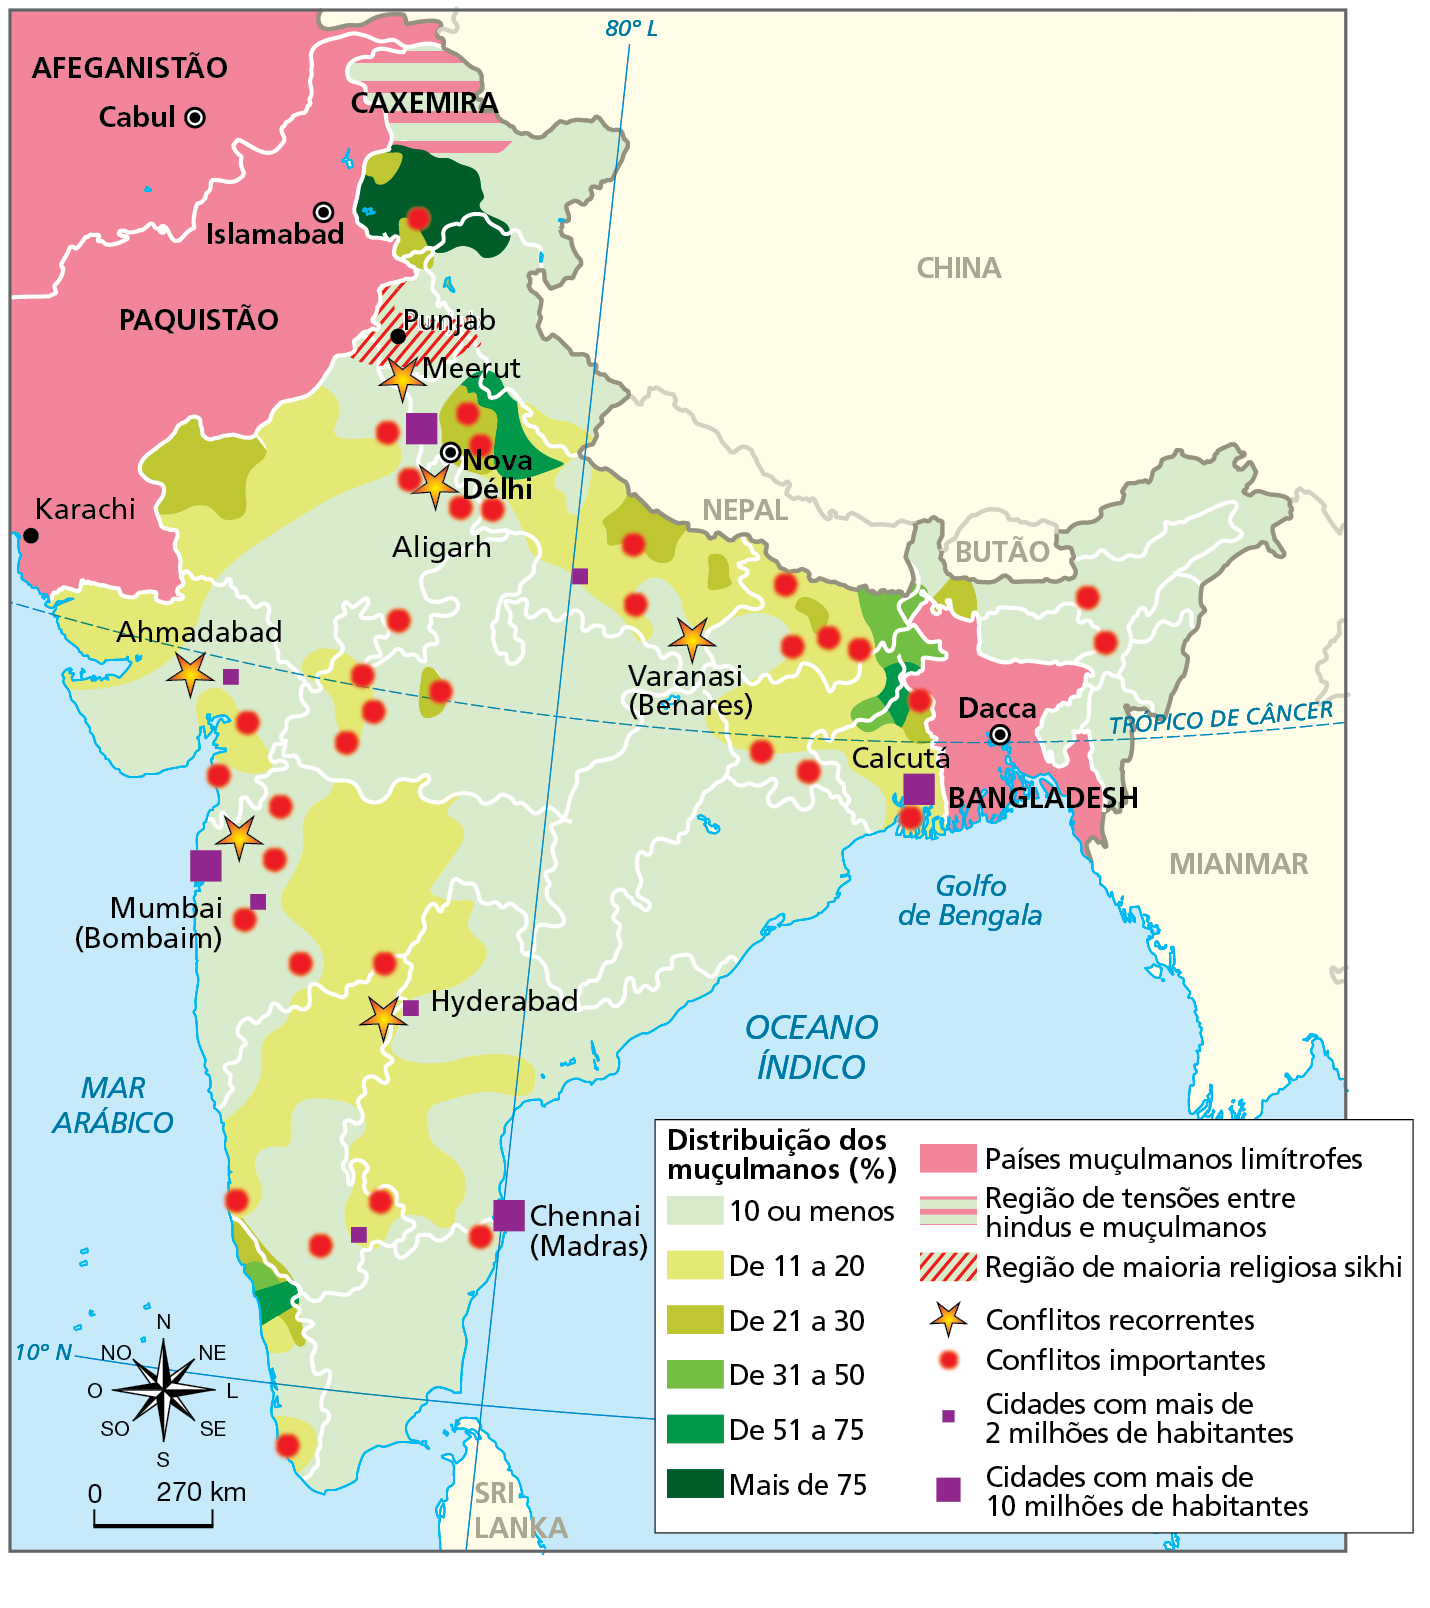 Mapa. Península Indiana: tensões étnico-culturais - 2020. Mapa mostrando o território indiano, parte do território paquistanês e do território afegão, com as representações dos conflitos étnico-culturais e com a distribuição em porcentagem de muçulmanos, indicada por meio de tonalidades de cor variam do menos intenso, em verde claro, indicando presença de 10% ou menos, para o mais intenso, em verde escuro, indicando presença de mais de 75% de muçulmanos.  
Distribuição dos muçulmanos (em porcentagem): 
10 ou menos: maior parte do território indiano. 
De 11 a 20: concentrações na parte central, na região noroeste e ao longo de uma faixa de terras no extremo norte. 
De 31 a 50: porções estritas nos extremos noroeste, norte e sudoeste. 
De 51 a 75 (verde): porções estritas nos extremos norte e na costa sudoeste.
Mais de 75 (verde escuro): concentração no extremo norte, próximo à região da Caxemira, na fronteira com o Paquistão.  
Países muçulmanos limítrofes (mancha rosa): a leste, Bangladesh (capital: Dacca); a oeste, Paquistão (capital: Islamabad); e Afeganistão (capital: Cabul).  
Região de tensões entre hindus e muçulmanos (hachura rosa e verde clara): região da Caxemira, na fronteira norte com o Paquistão. Região de maioria religiosa sikhi (hachura vermelha): Punjab, divisa com Paquistão, no extremo noroeste. 
Conflitos recorrentes (ponto em formato de estrela): Varanasi (Benares), Mumbai (Bombaim).
Conflitos importantes (ponto vermelho): na costa oeste, na parte central do território e ao longo de uma faixa de terras no extremo norte. 
Cidades com mais de 2 milhões de habitantes (quadro menor roxo): Ahmadabad, Hyderabad e outras. 
Cidades com mais de 10 milhões de habitantes (quadro maior em roxo): Calcutá, Chennai (Madras), Mumbai (Bombaim), Nova Délhi.
Na parte de baixo, à esquerda, rosa dos ventos e escala de 0 a 270 quilômetros.